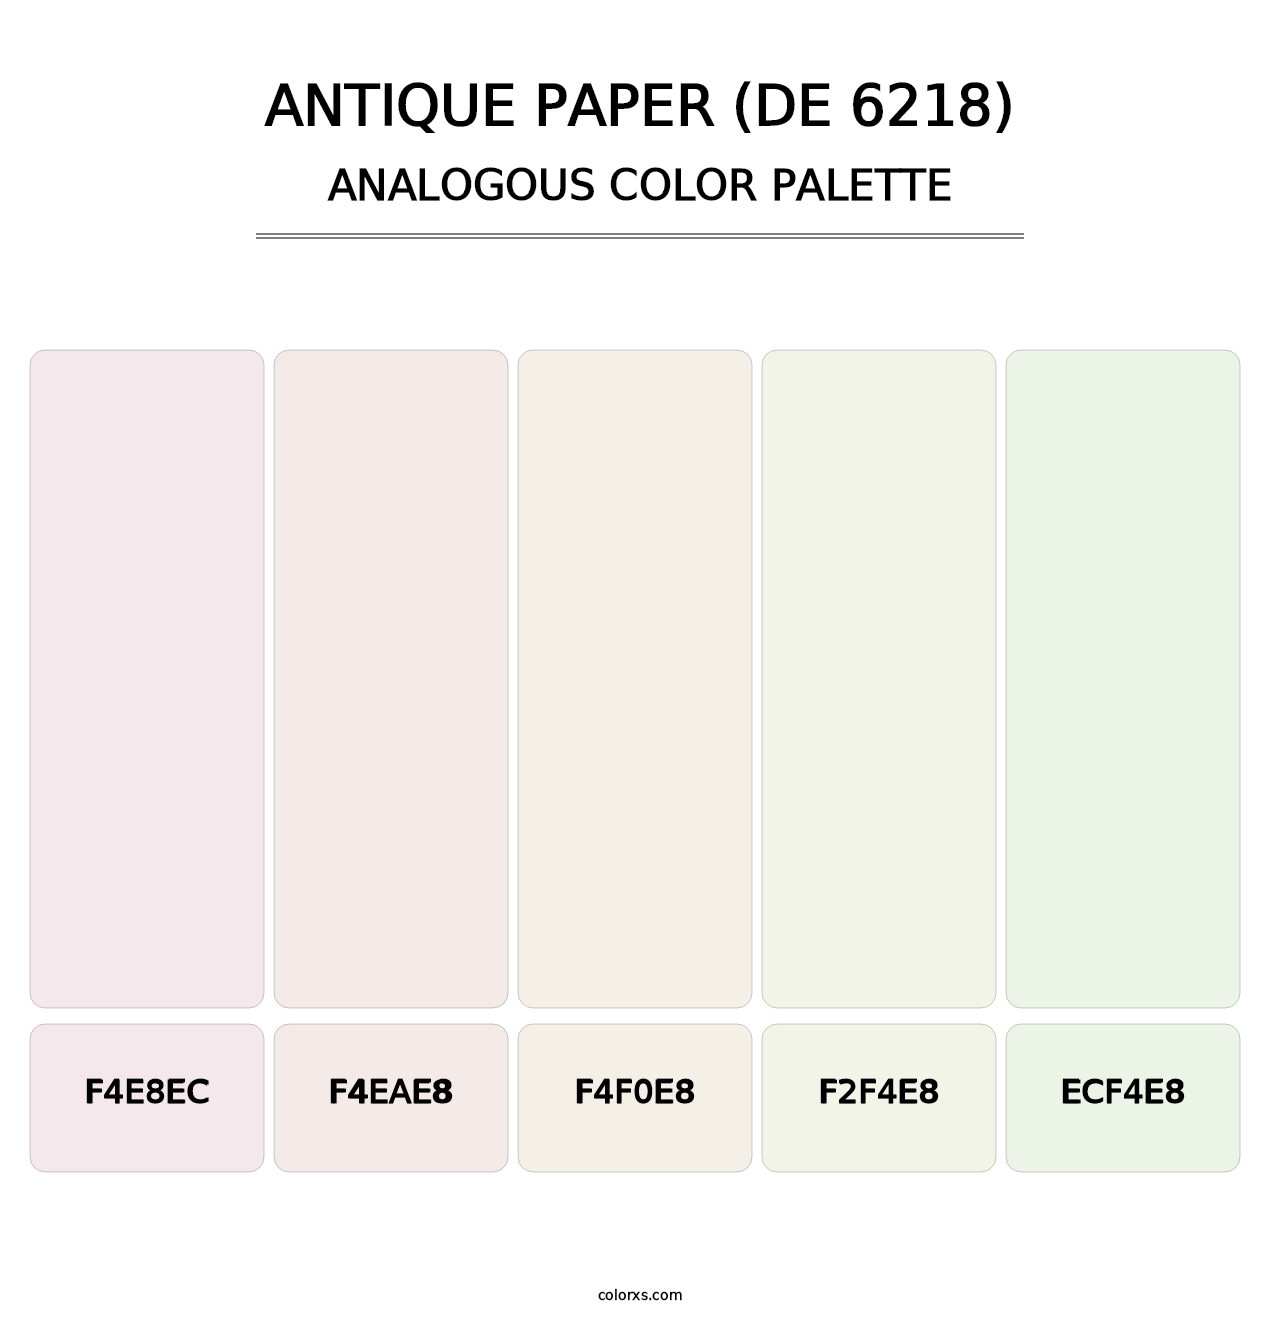 Antique Paper (DE 6218) - Analogous Color Palette